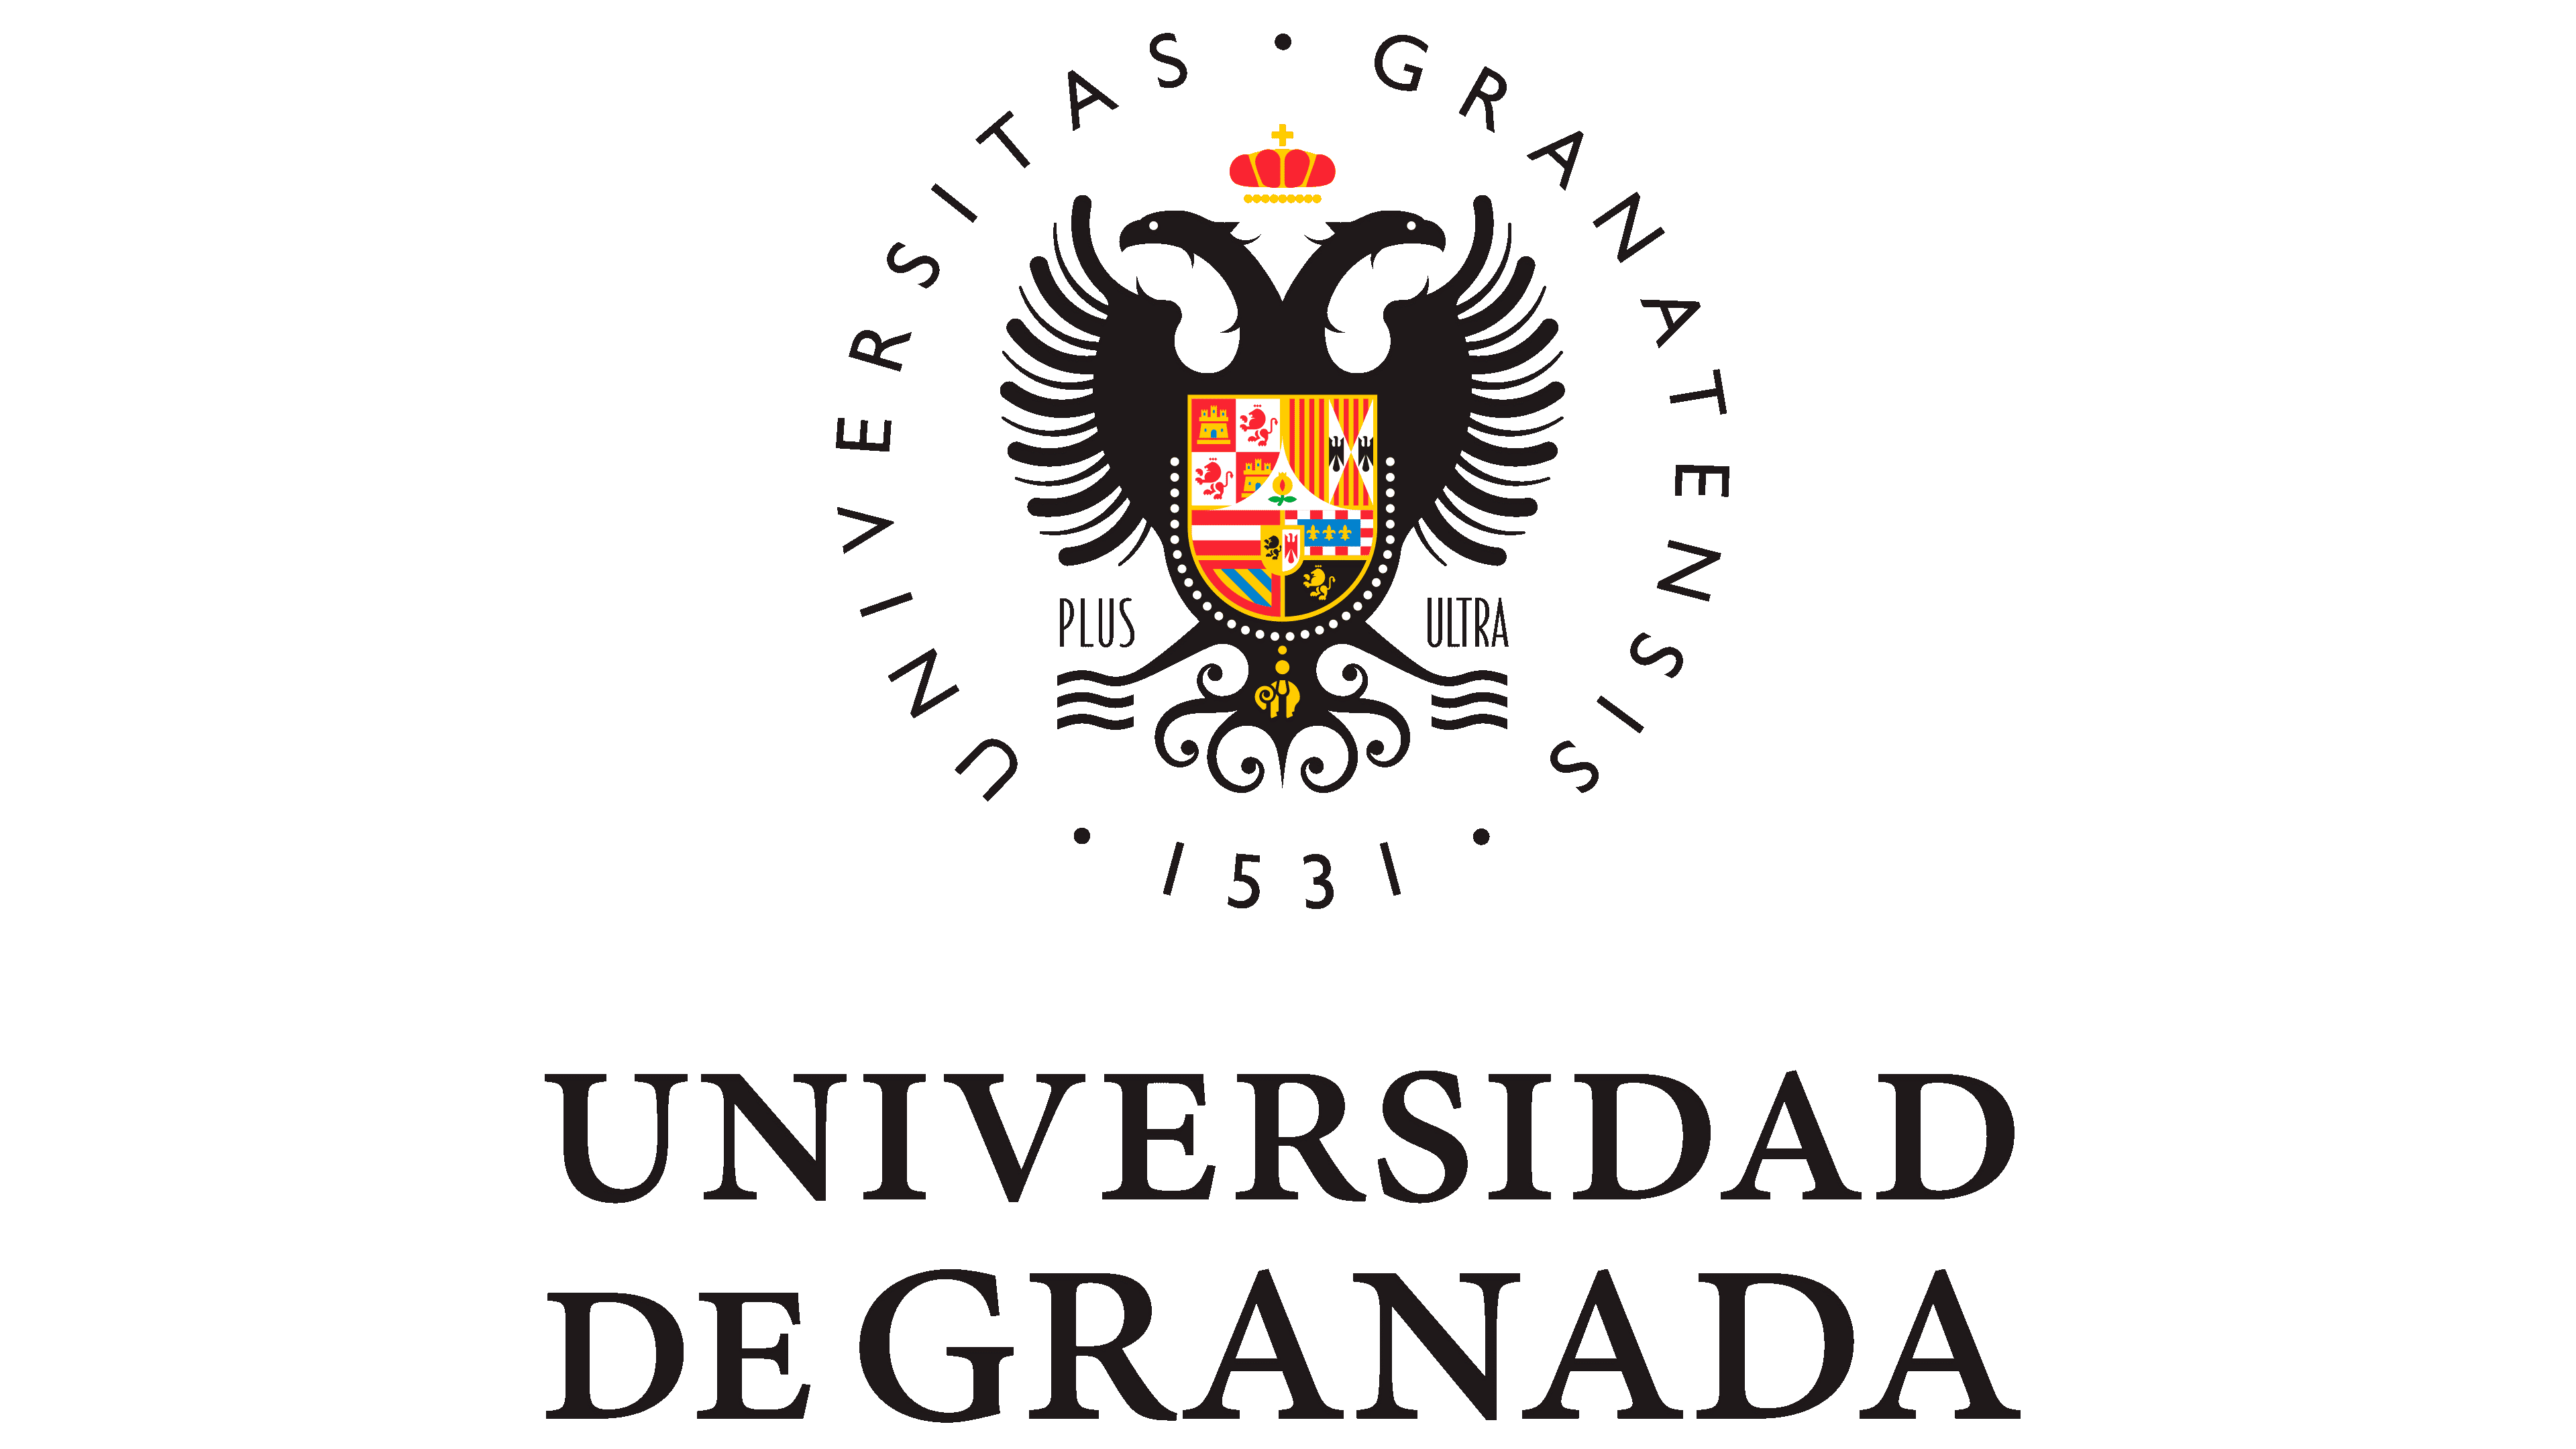 Hapet thirrja për aplikime për studentët në Universitetin e Granadës, Spanjë, në kuadër të Programit Erasmus+, për semestrin e dytë të vitit akademik 2023-2024